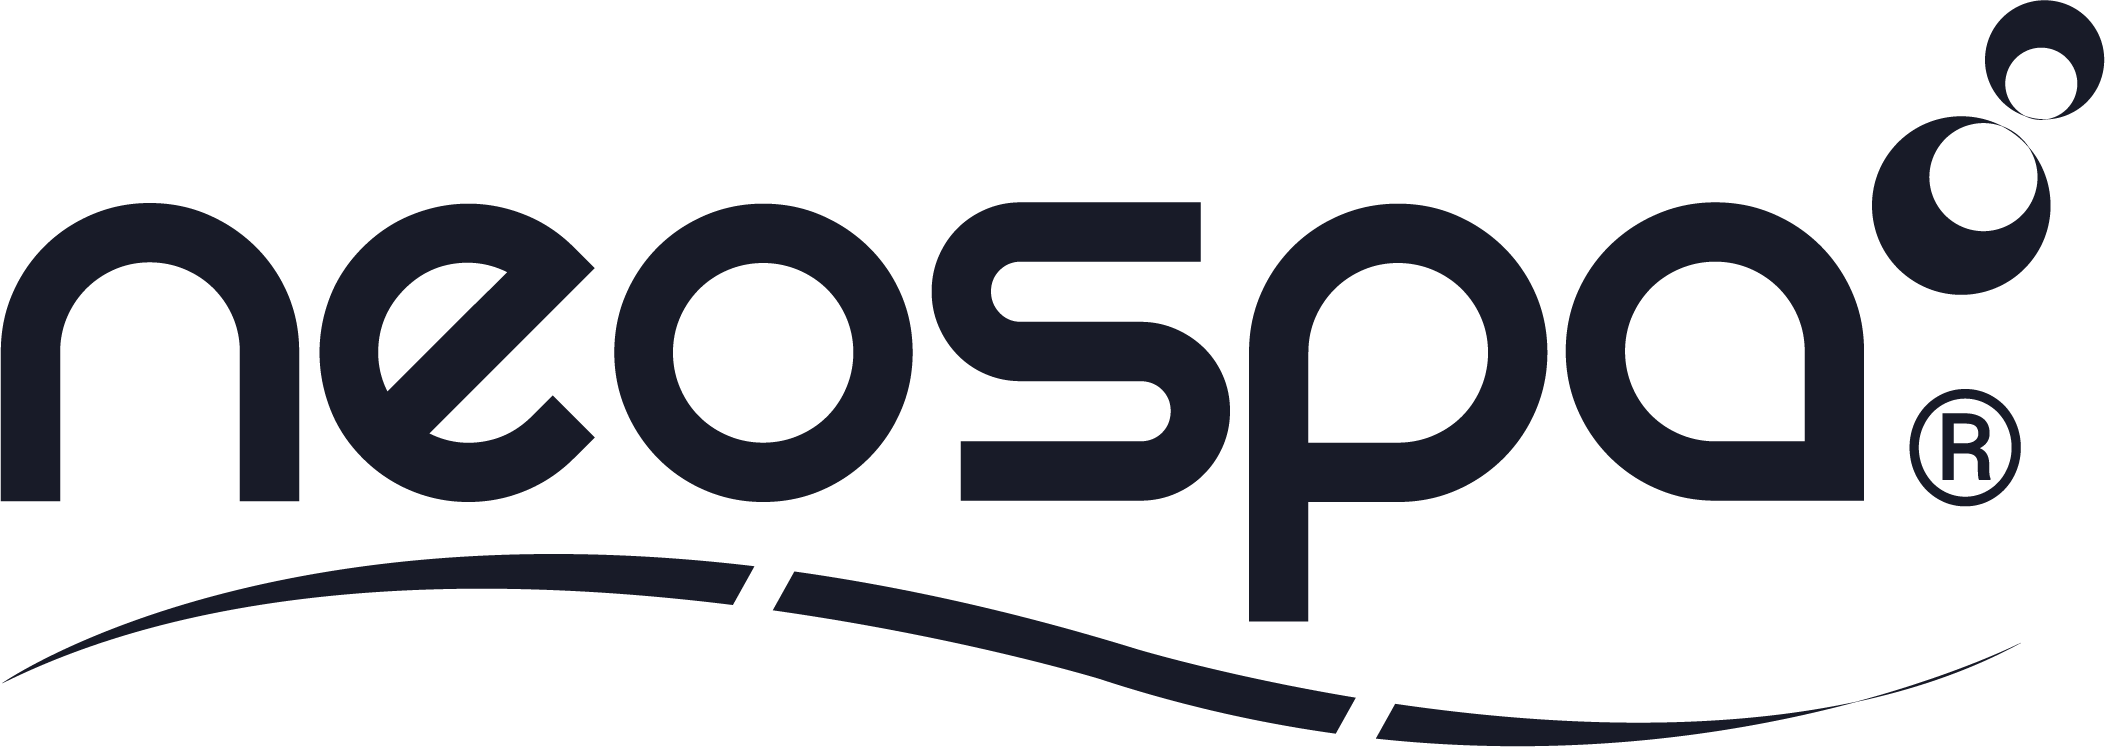 NEOSPA - Une marque de spas Lekovic Industries